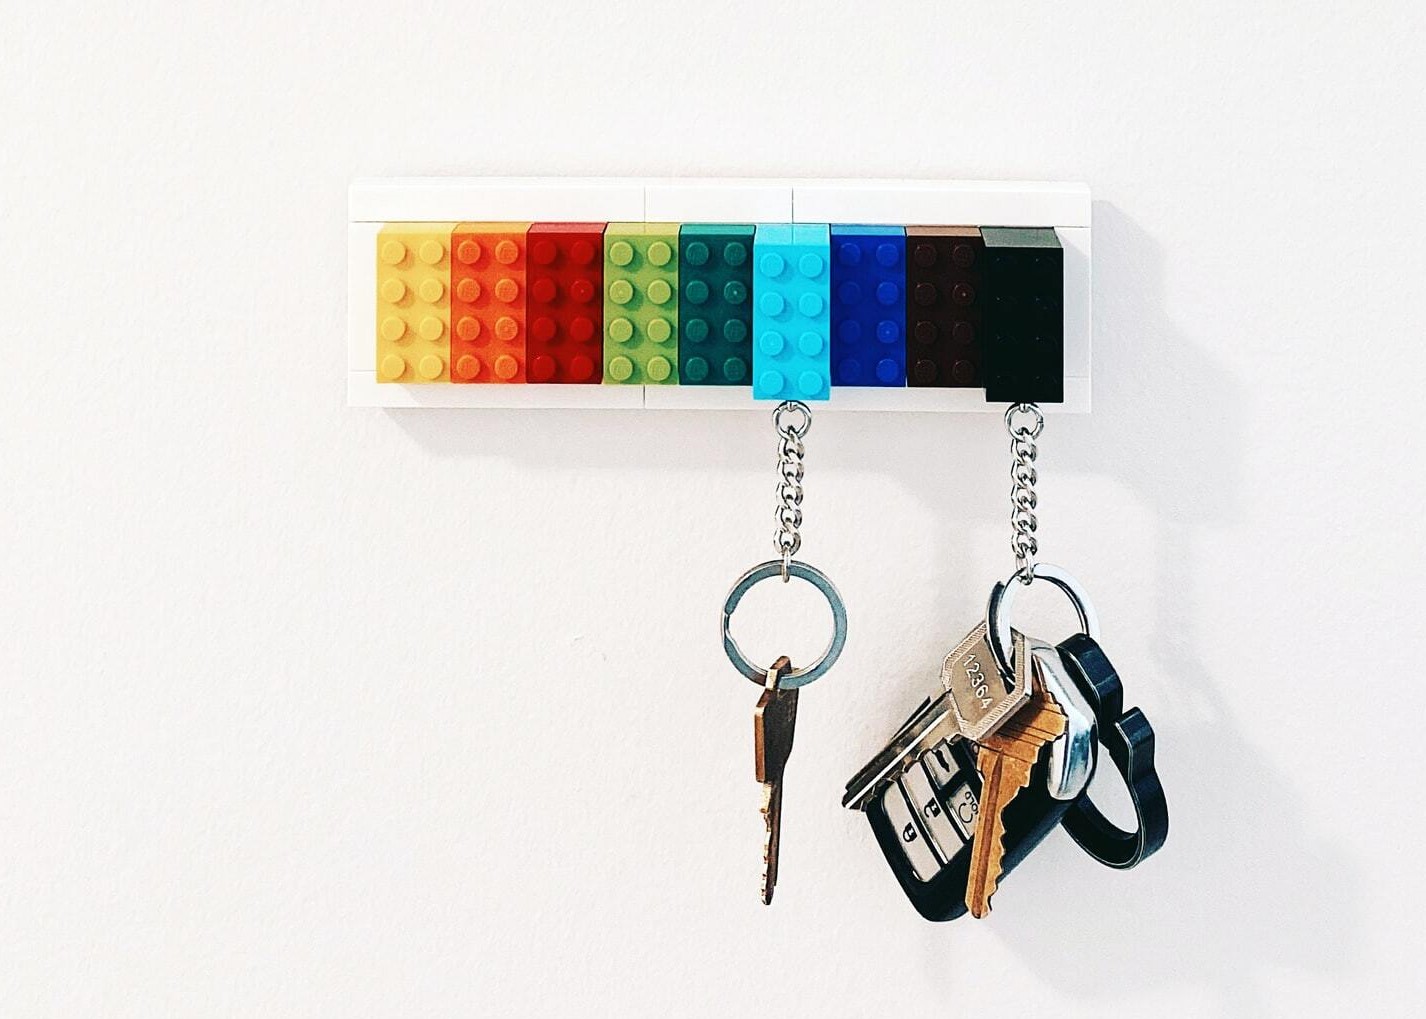 Porte-clés mural - Une décoration pour ranger vos clés !